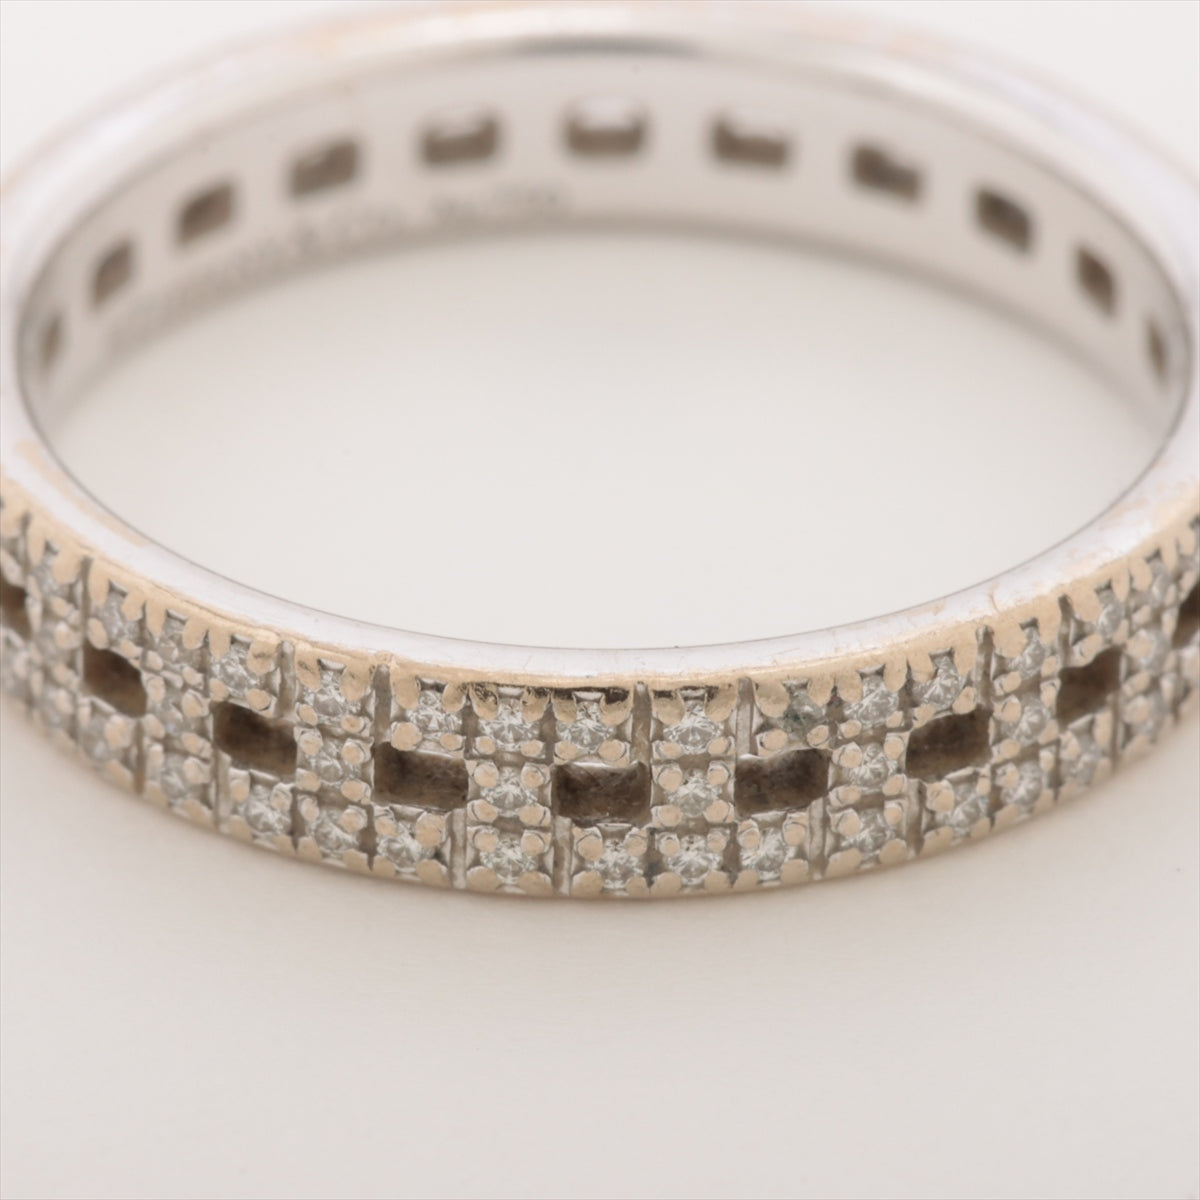 Tiffany T-Turo Naro Diamond Ring 750 (WG) 3.6g